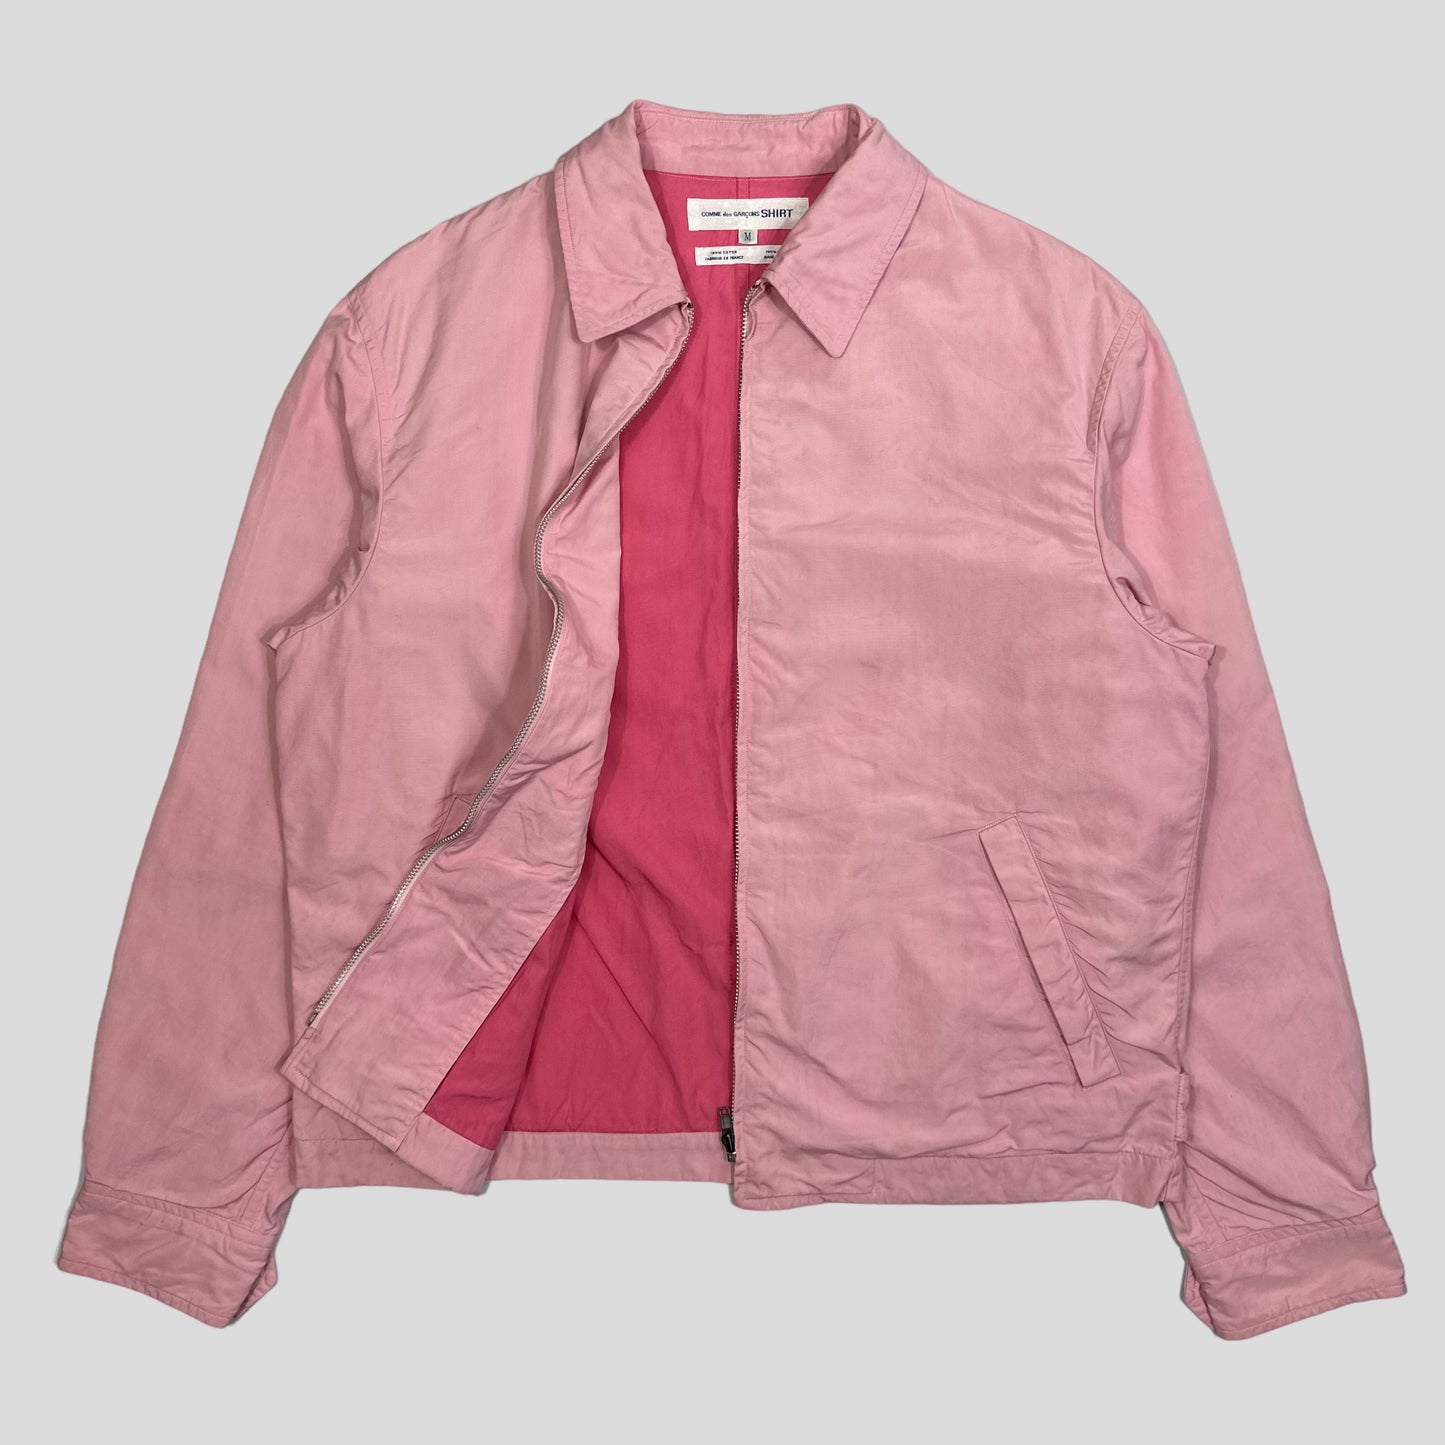 CDG Shirt 90’s Bubblegum Cotton Work Jacket - M